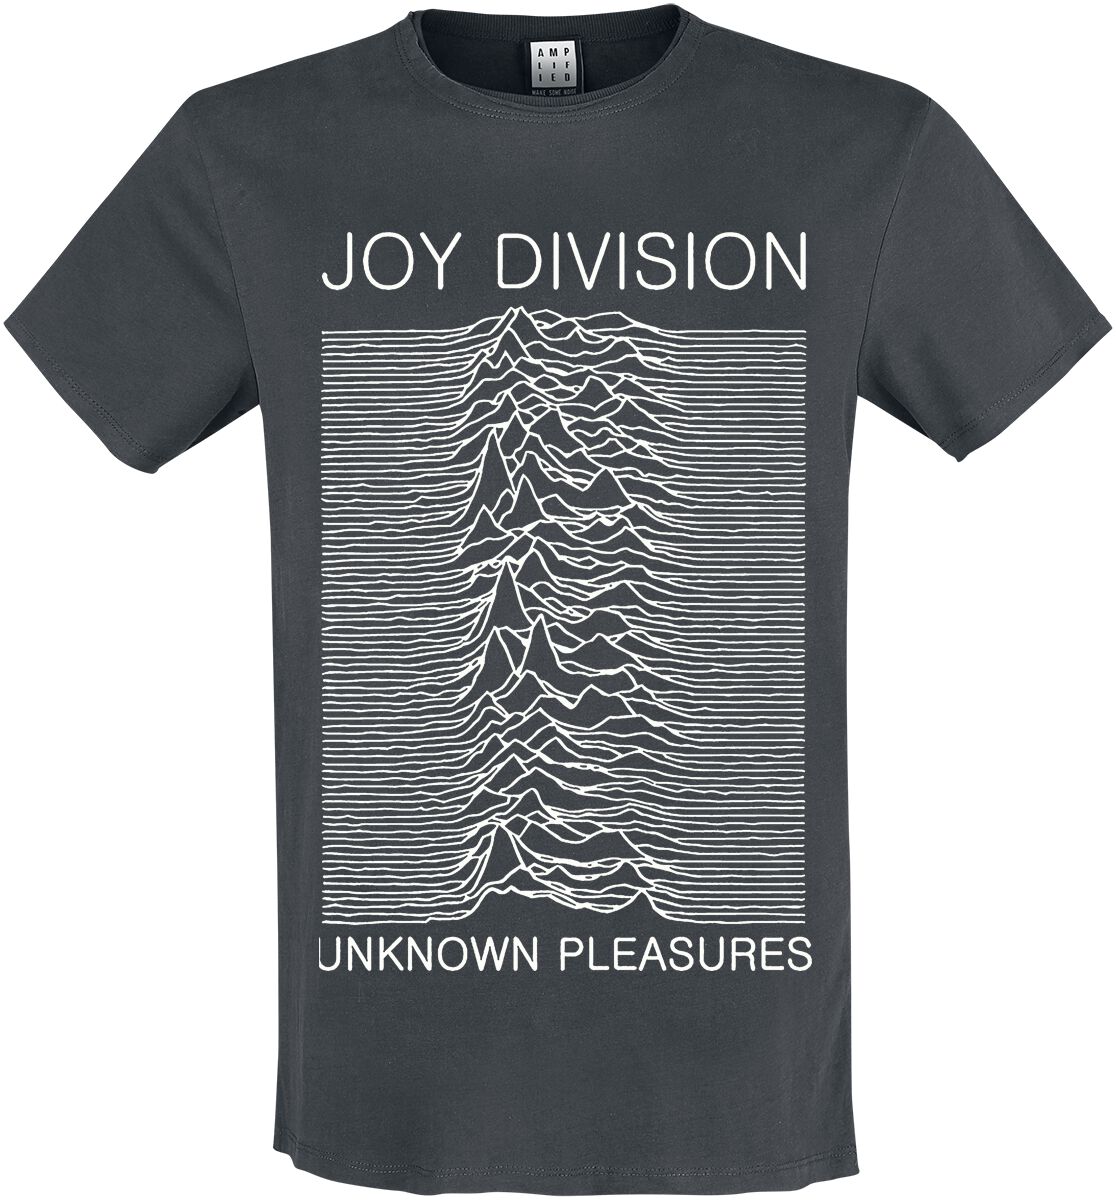 Joy Division T-Shirt - Amplified Collection - Unknown Pleasures - S bis 3XL - für Männer - Größe S - charcoal  - Lizenziertes Merchandise!